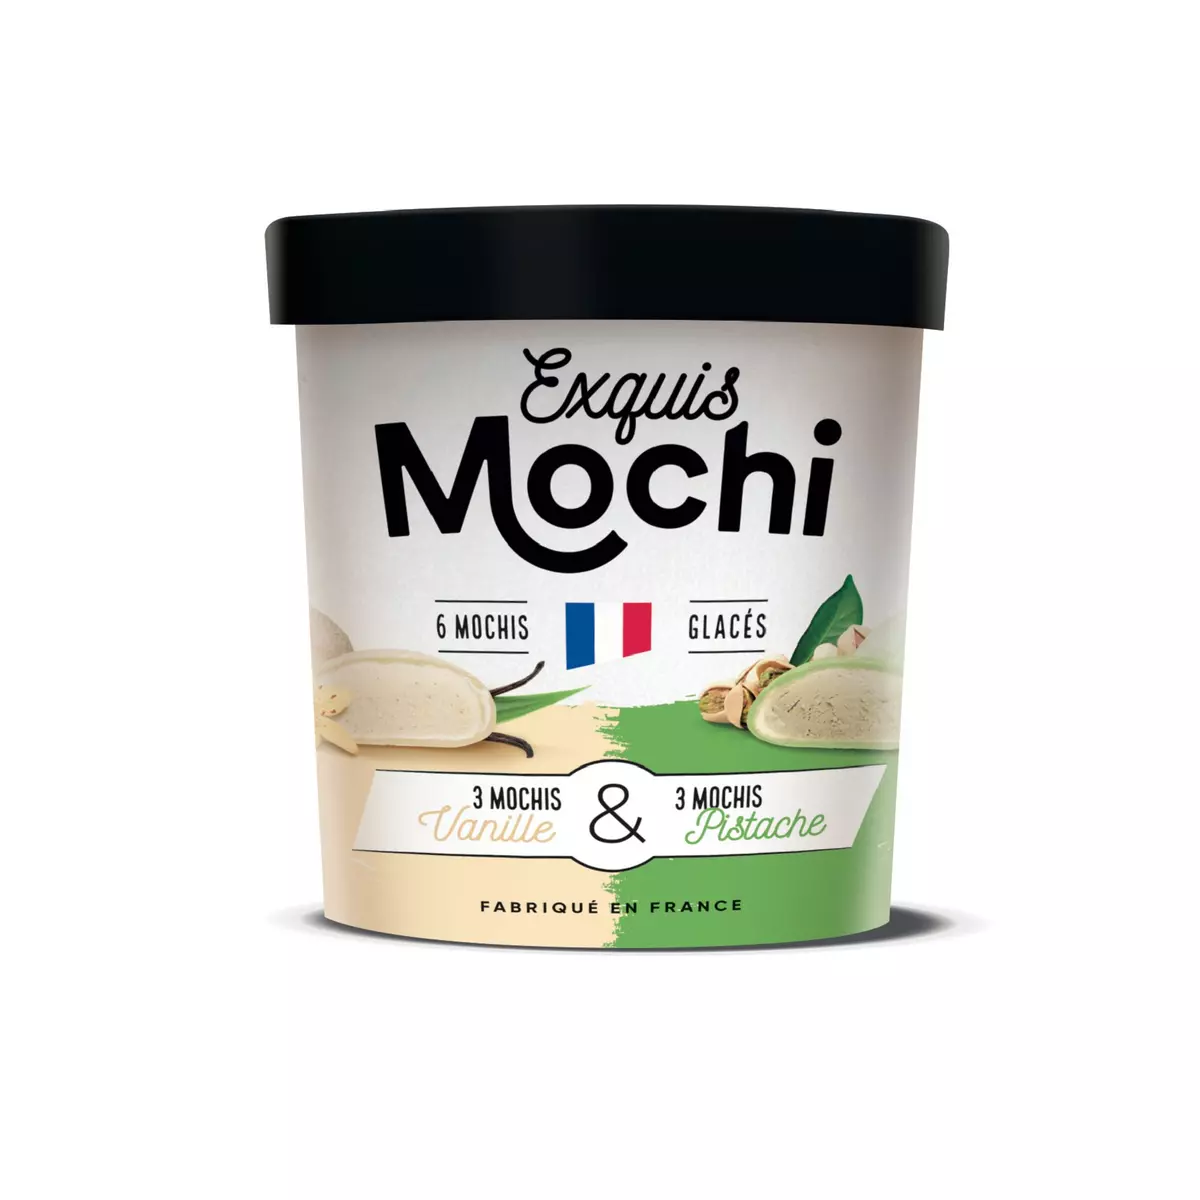 EXQUIS MOCHI Mochis glacés vanille et pistache 6 pièces 180g